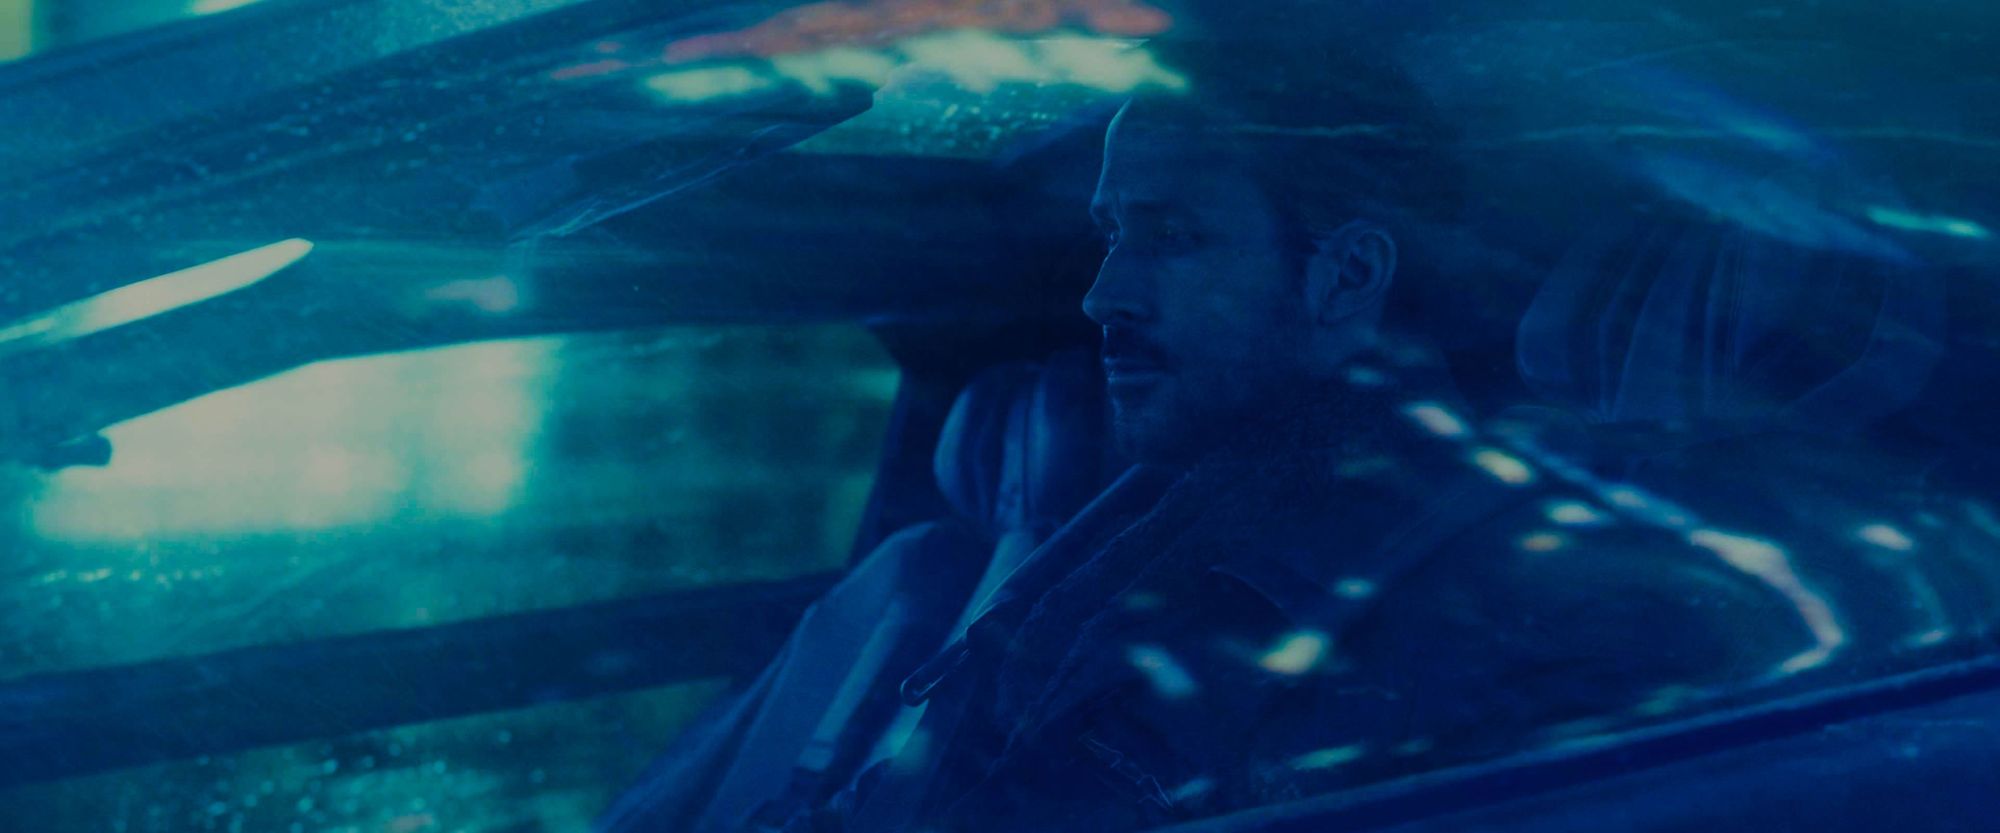 Man driving in a futuristic car in blue light